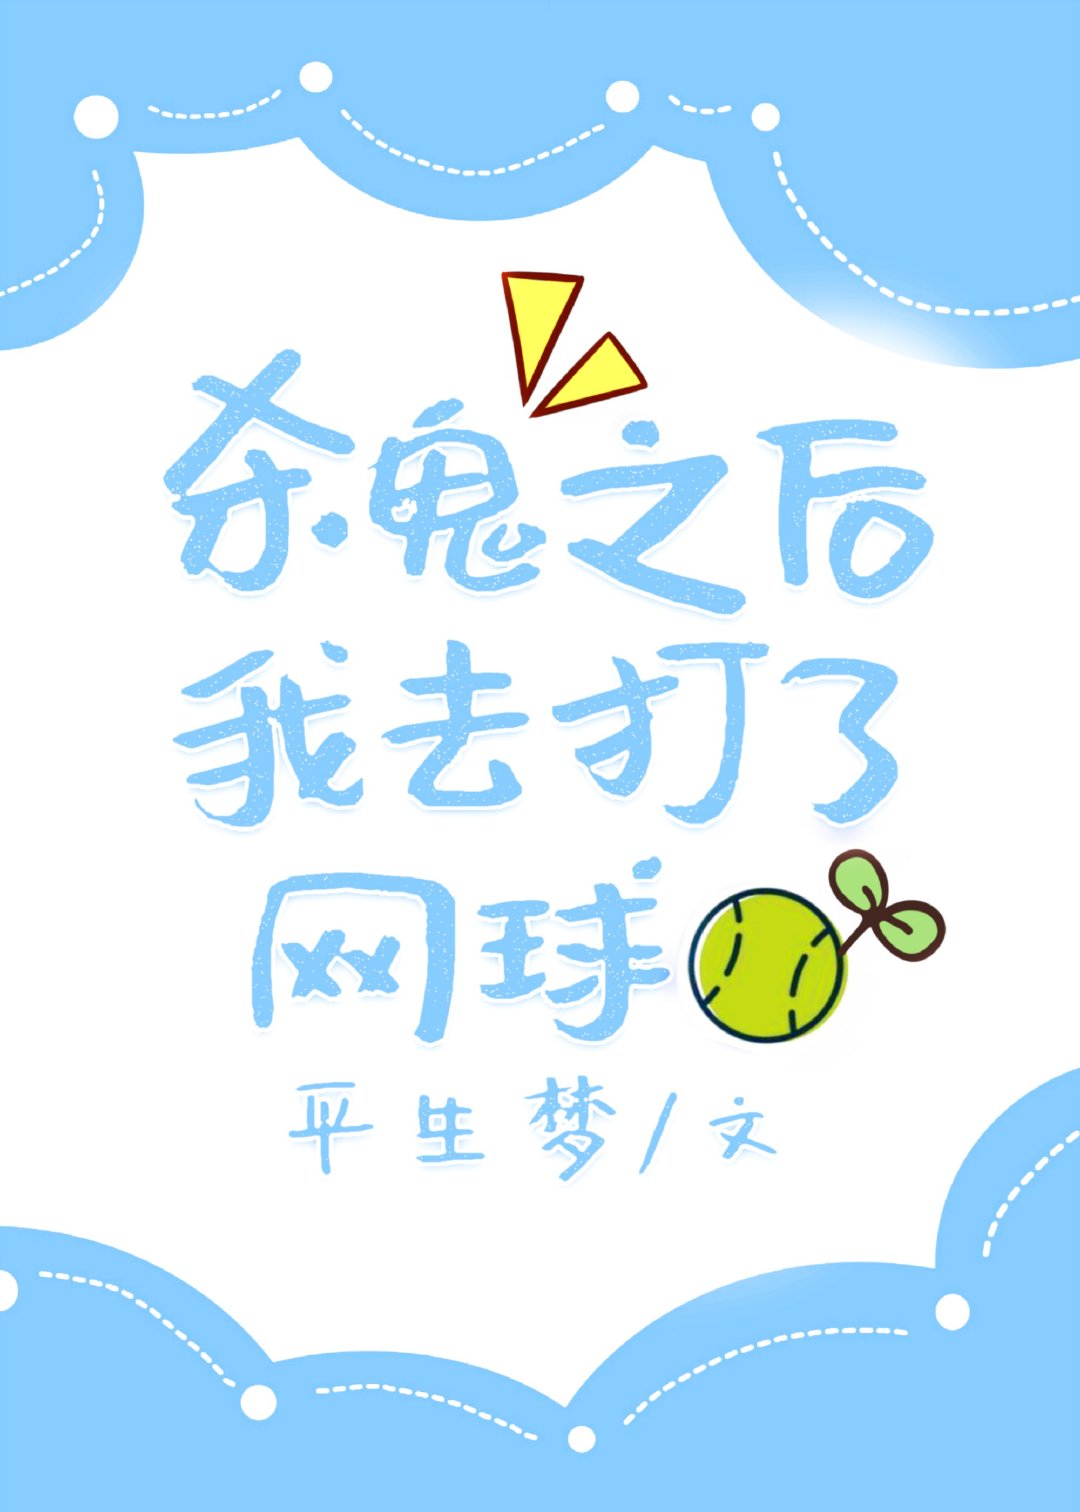 [小说]  晋江VIP2022-6-1完结 总书评数：4786当前被收藏数：14294营养液数：15680文_杀鬼之后我去打了网球